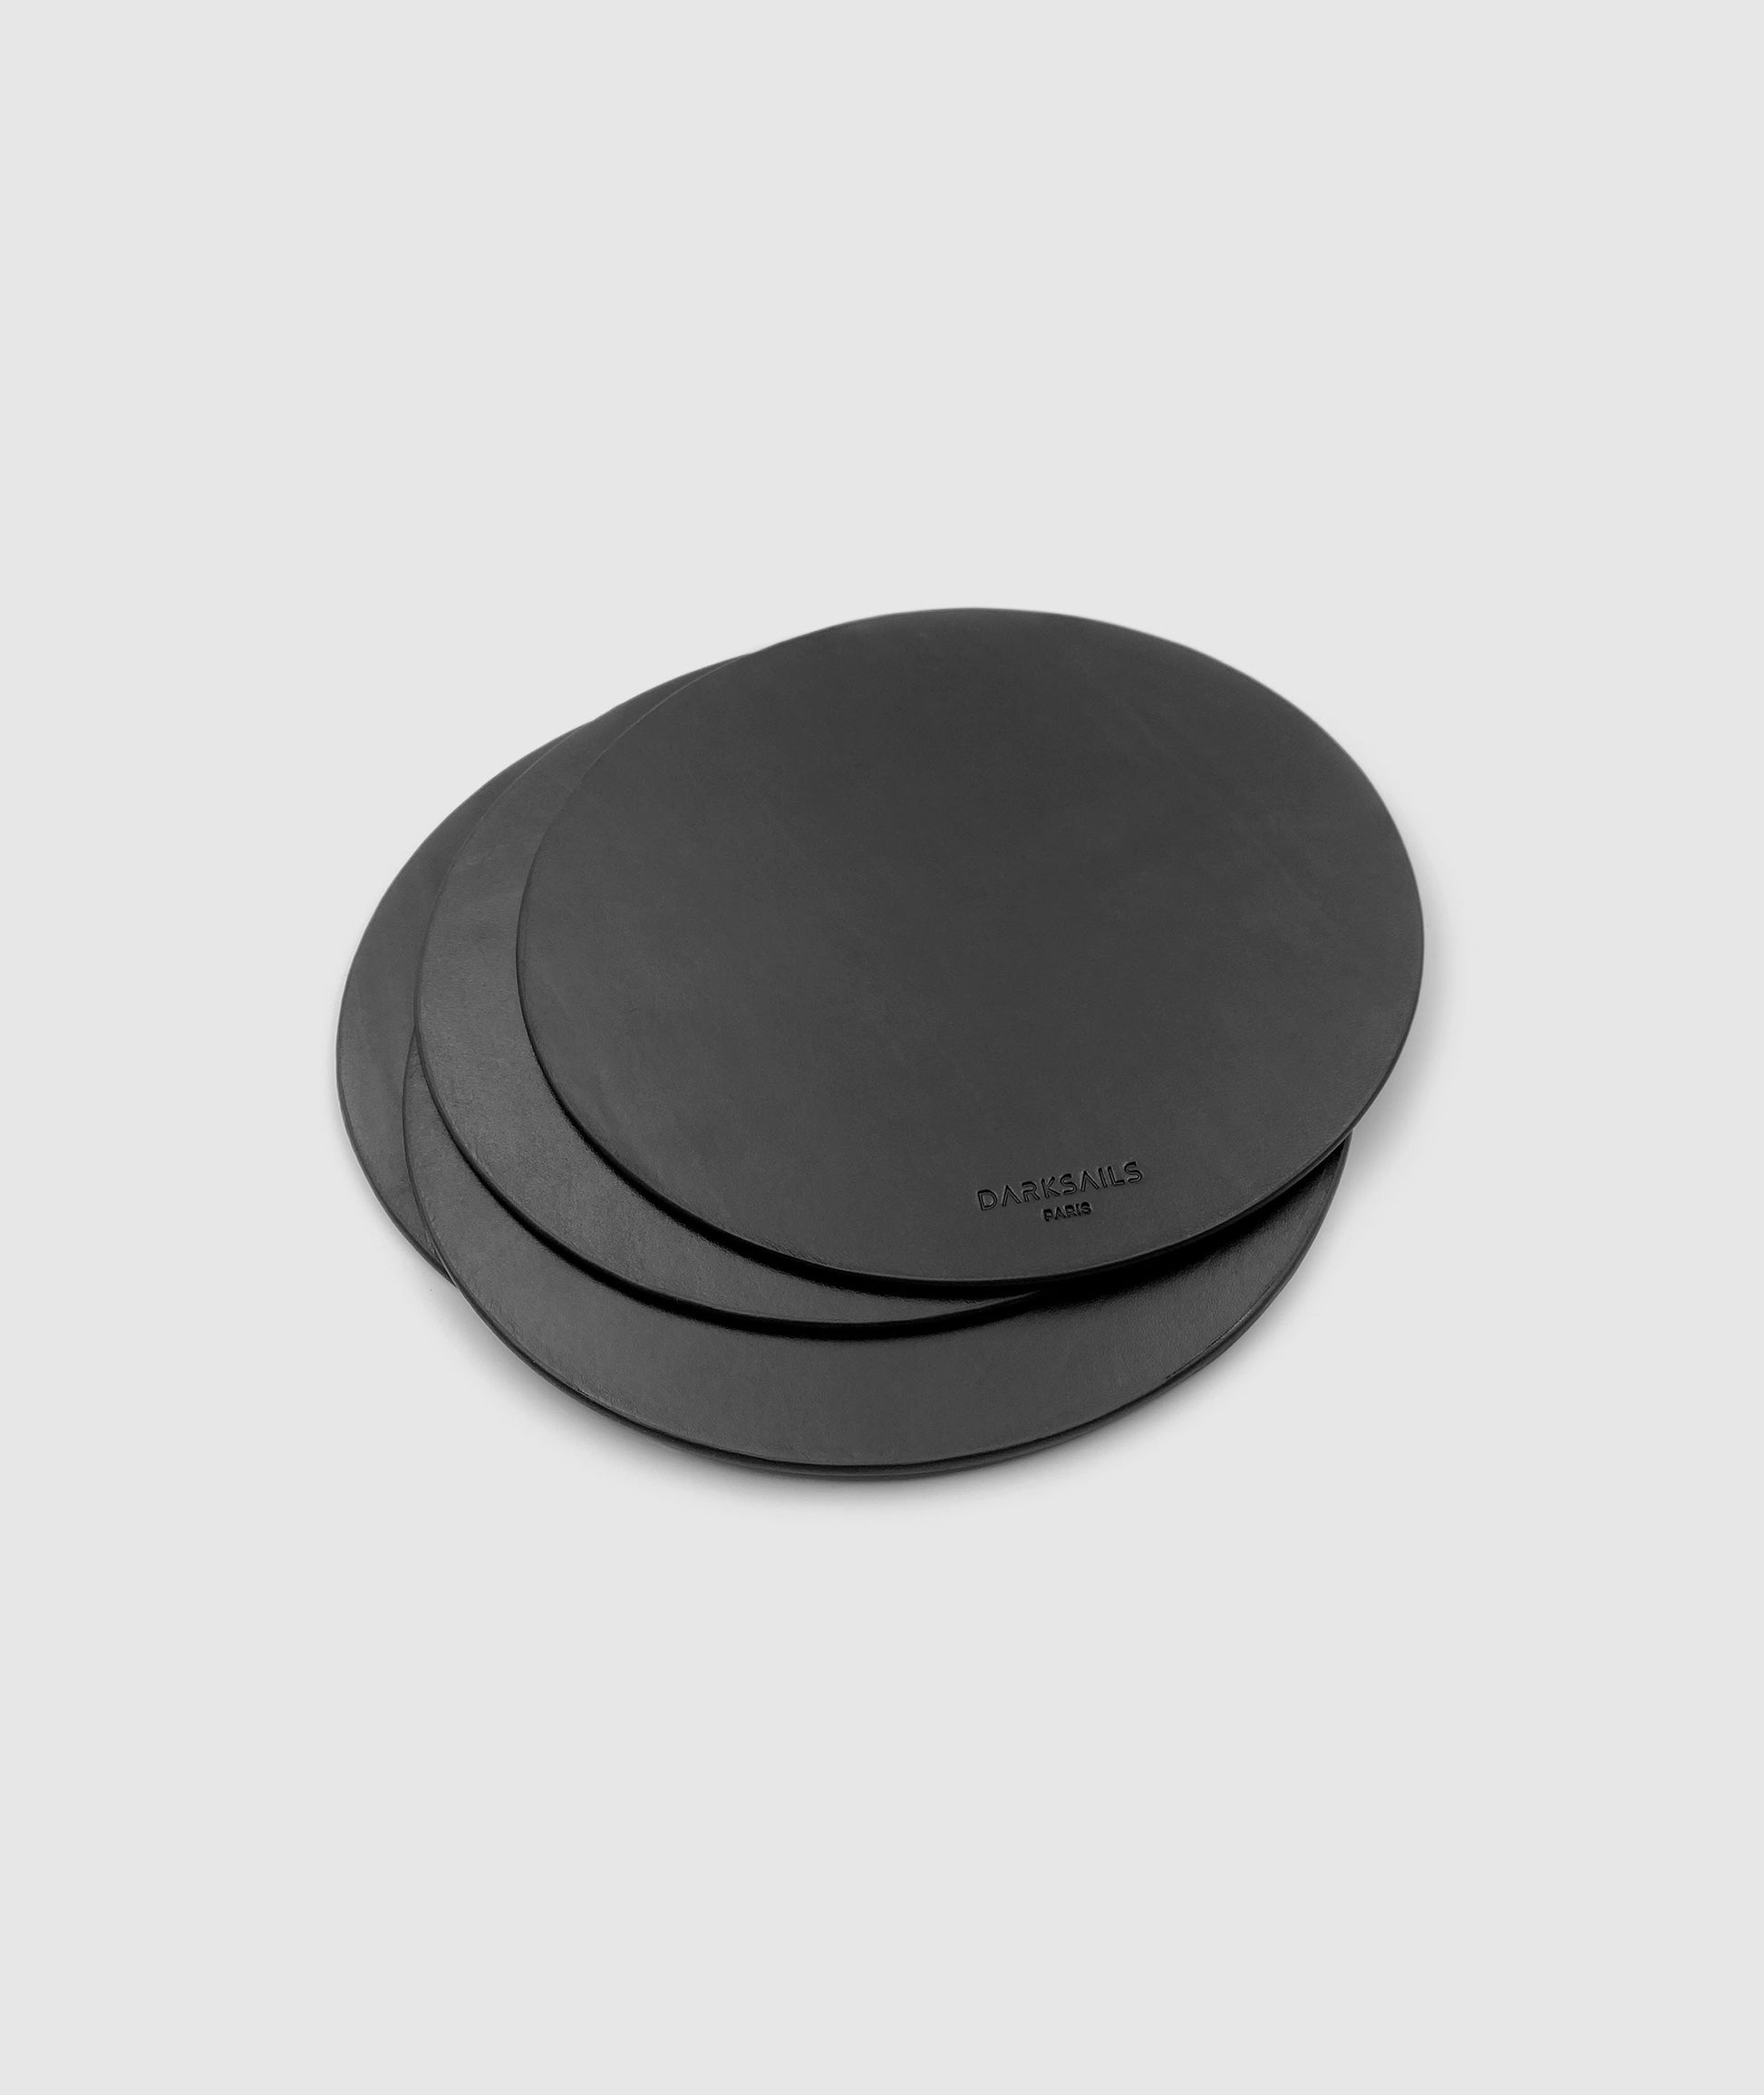 Black round leather mouse pad by darksails - tapis de souris rond en cuir noir fait main